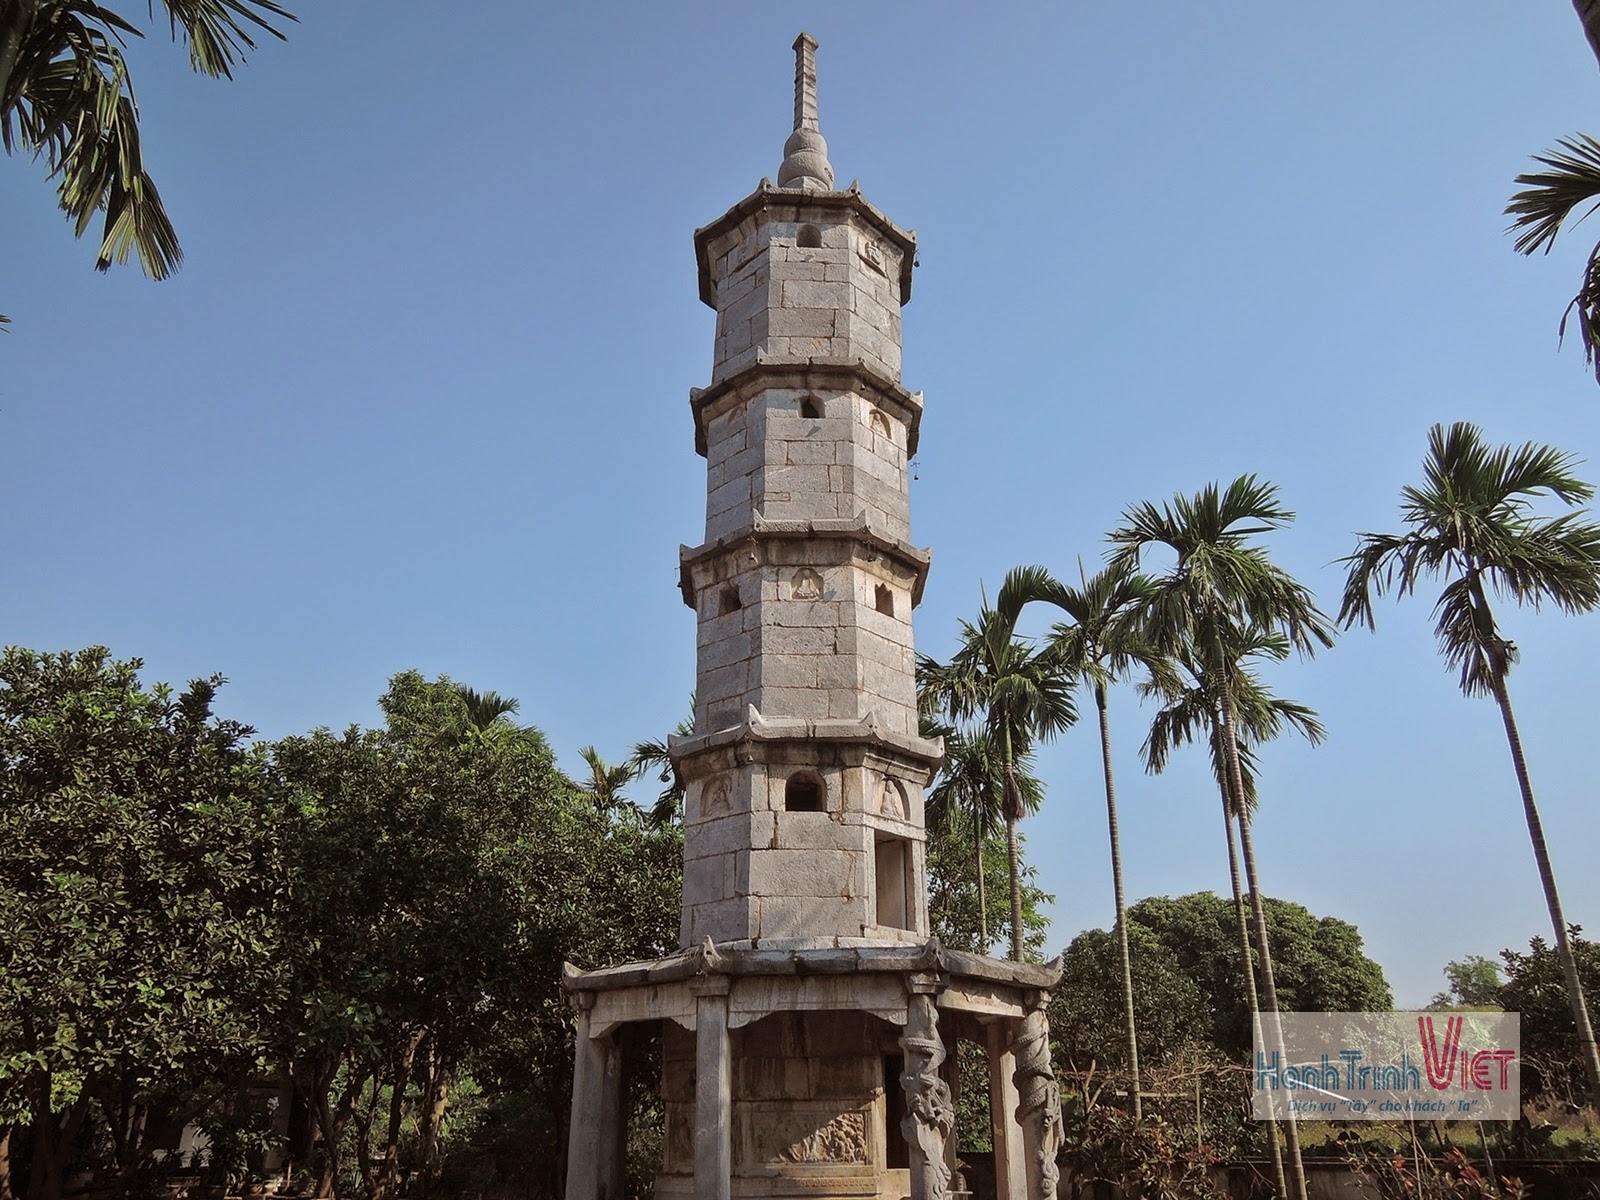 Tham quan chùa Bút Tháp ở Bắc Ninh - 2014